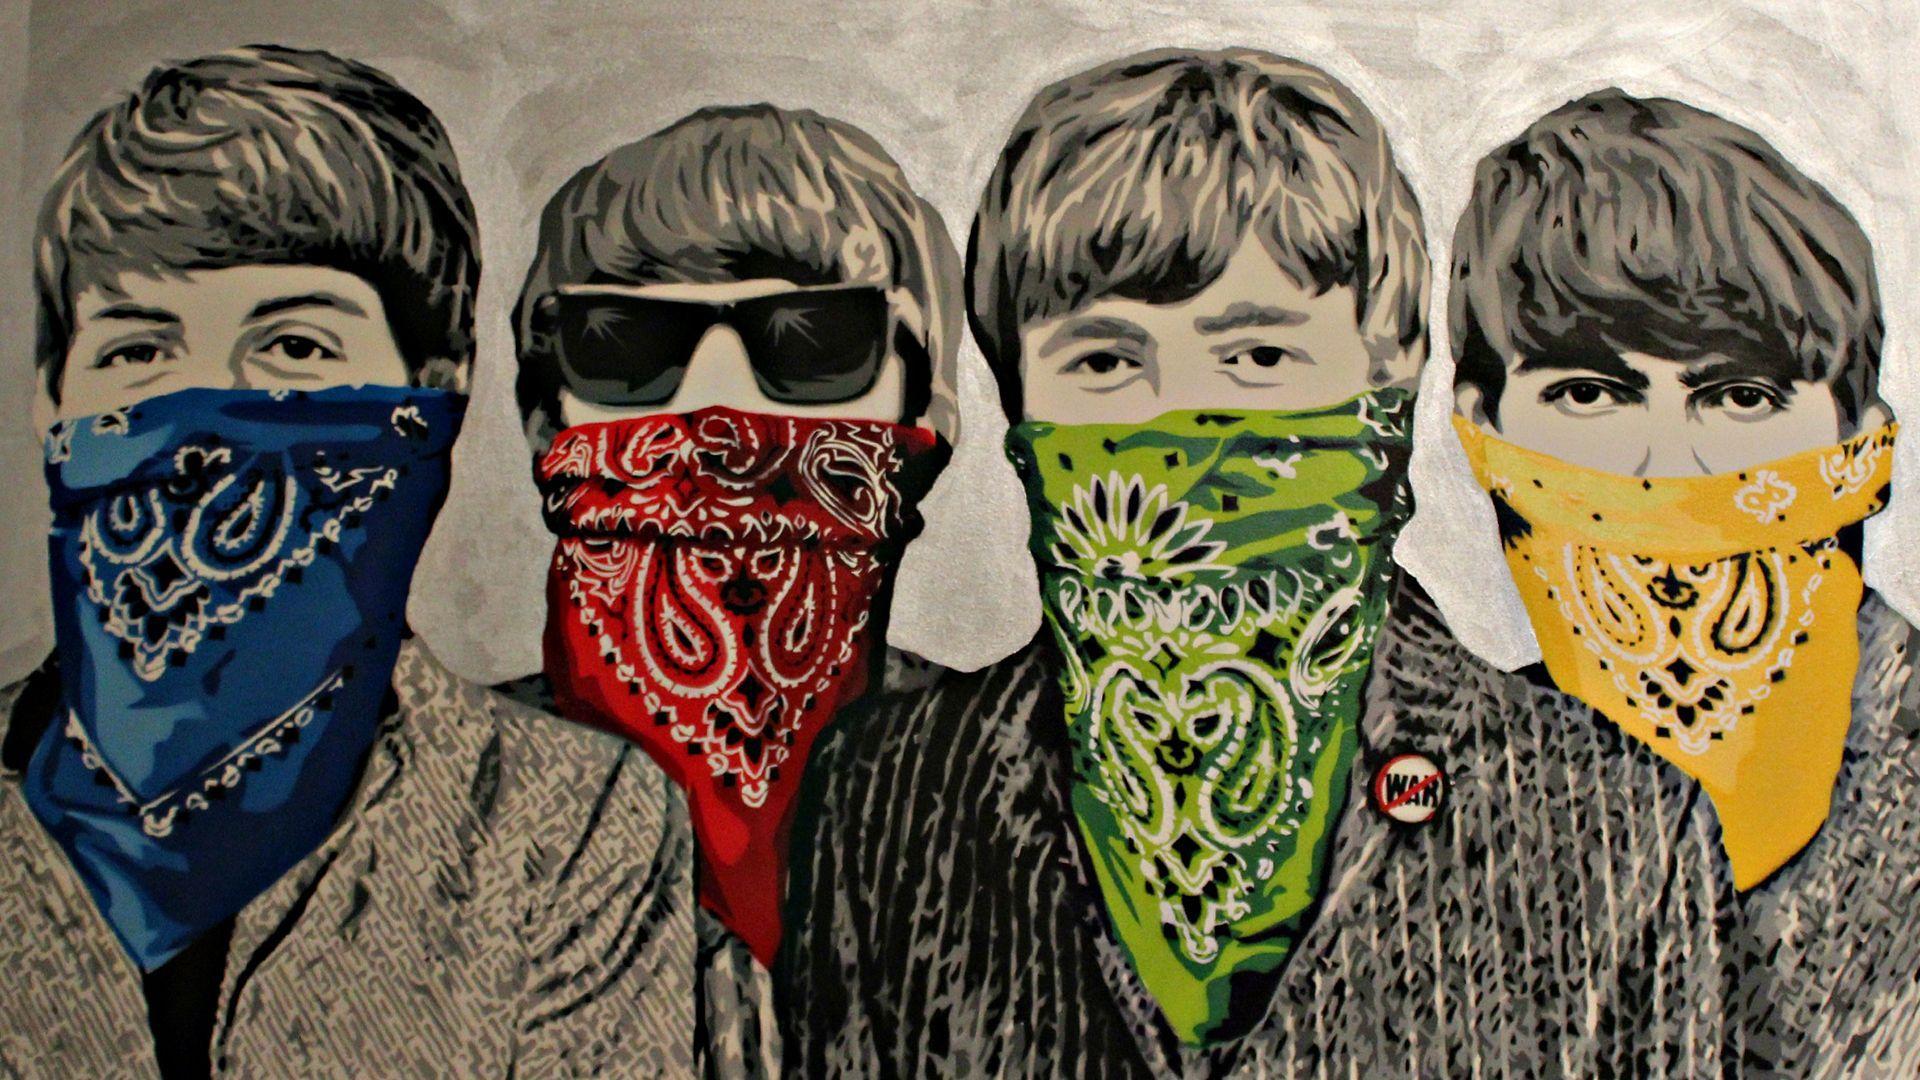 Banksy Beatles Bandanna Graffiti Band Group Image Download. Download